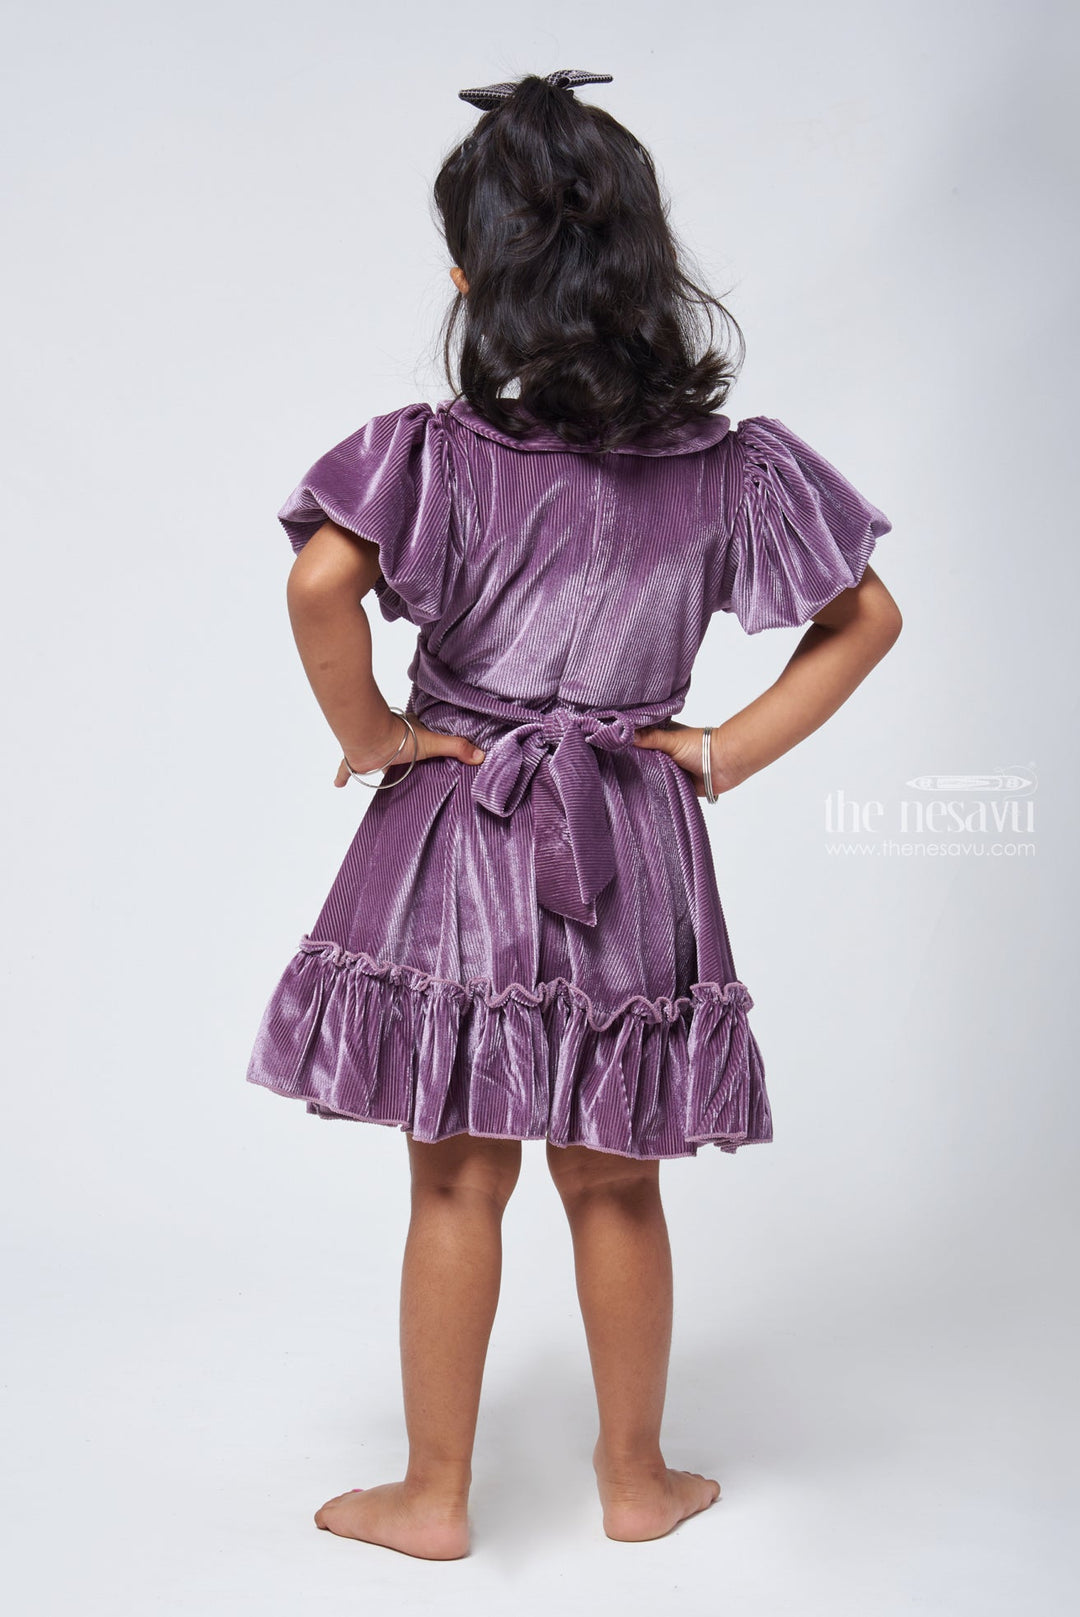 The Nesavu Frocks & Dresses Purple Velvet Baby Girl Frock - Peter Pan Collar & Bow Embellishment Nesavu Girls Velvet Frock | Party frock for Baby Girls | The Nesavu